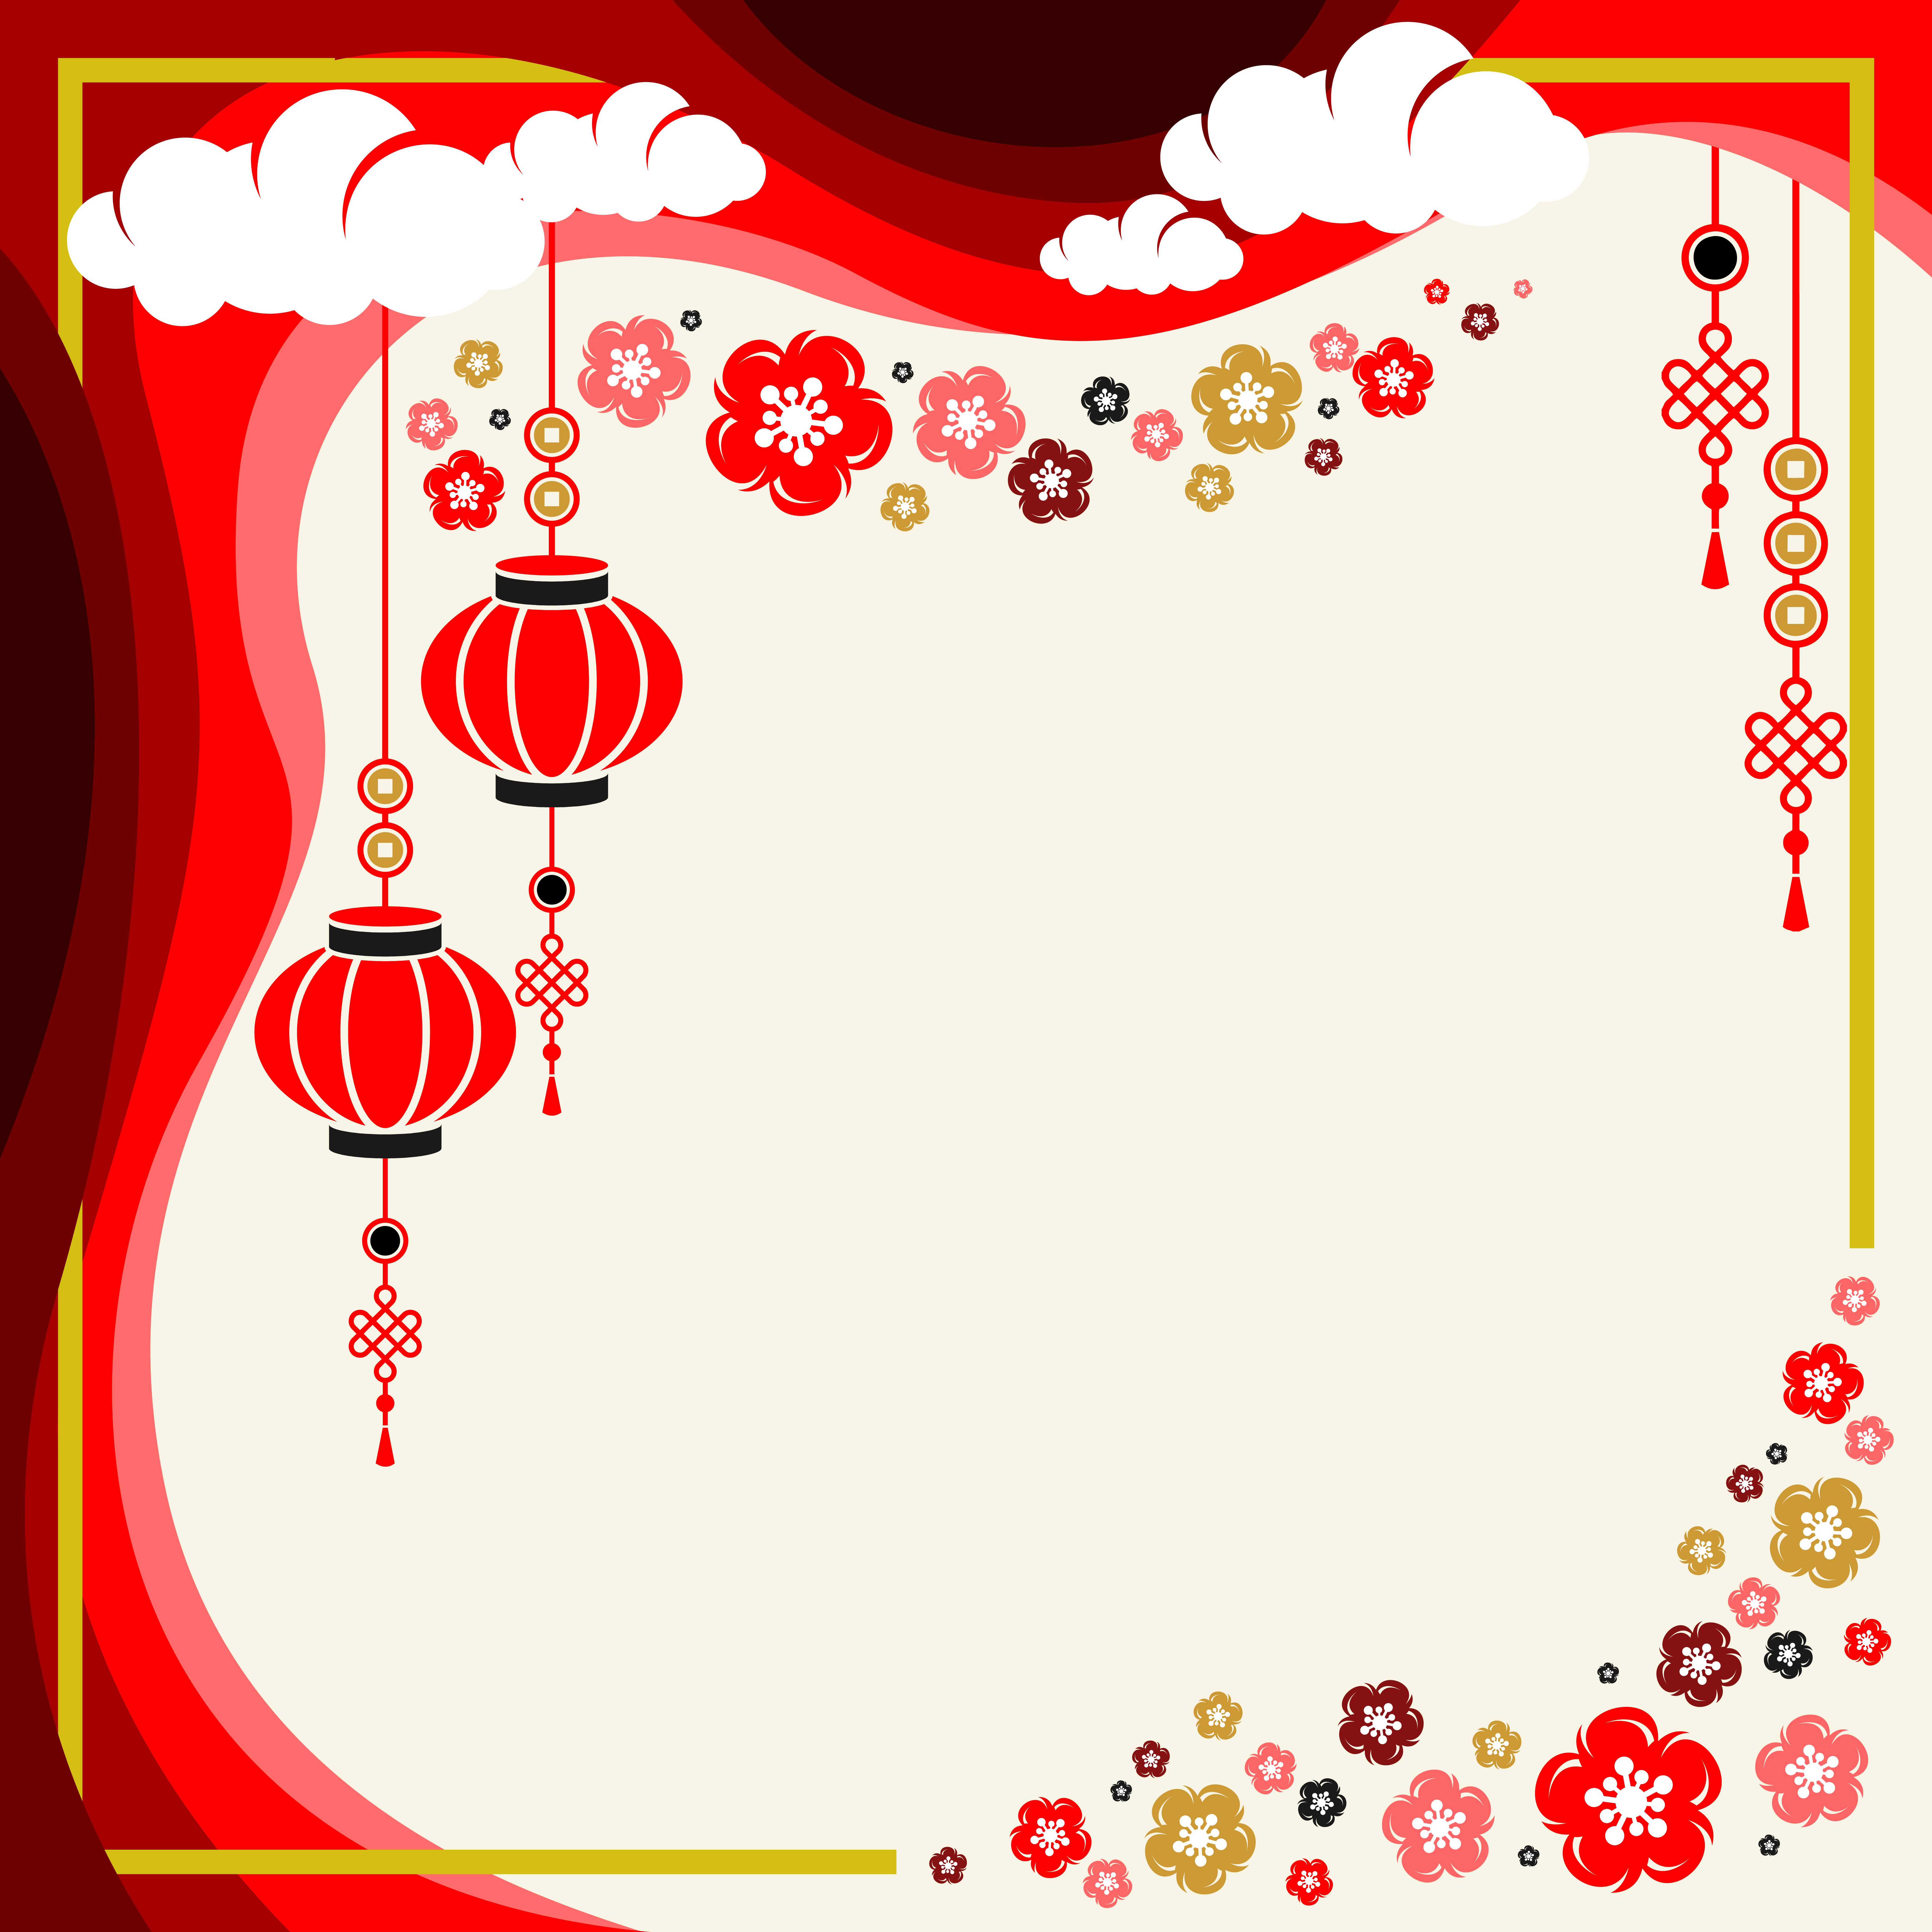 décorations chinoises rouges 4027286 Art vectoriel chez Vecteezy